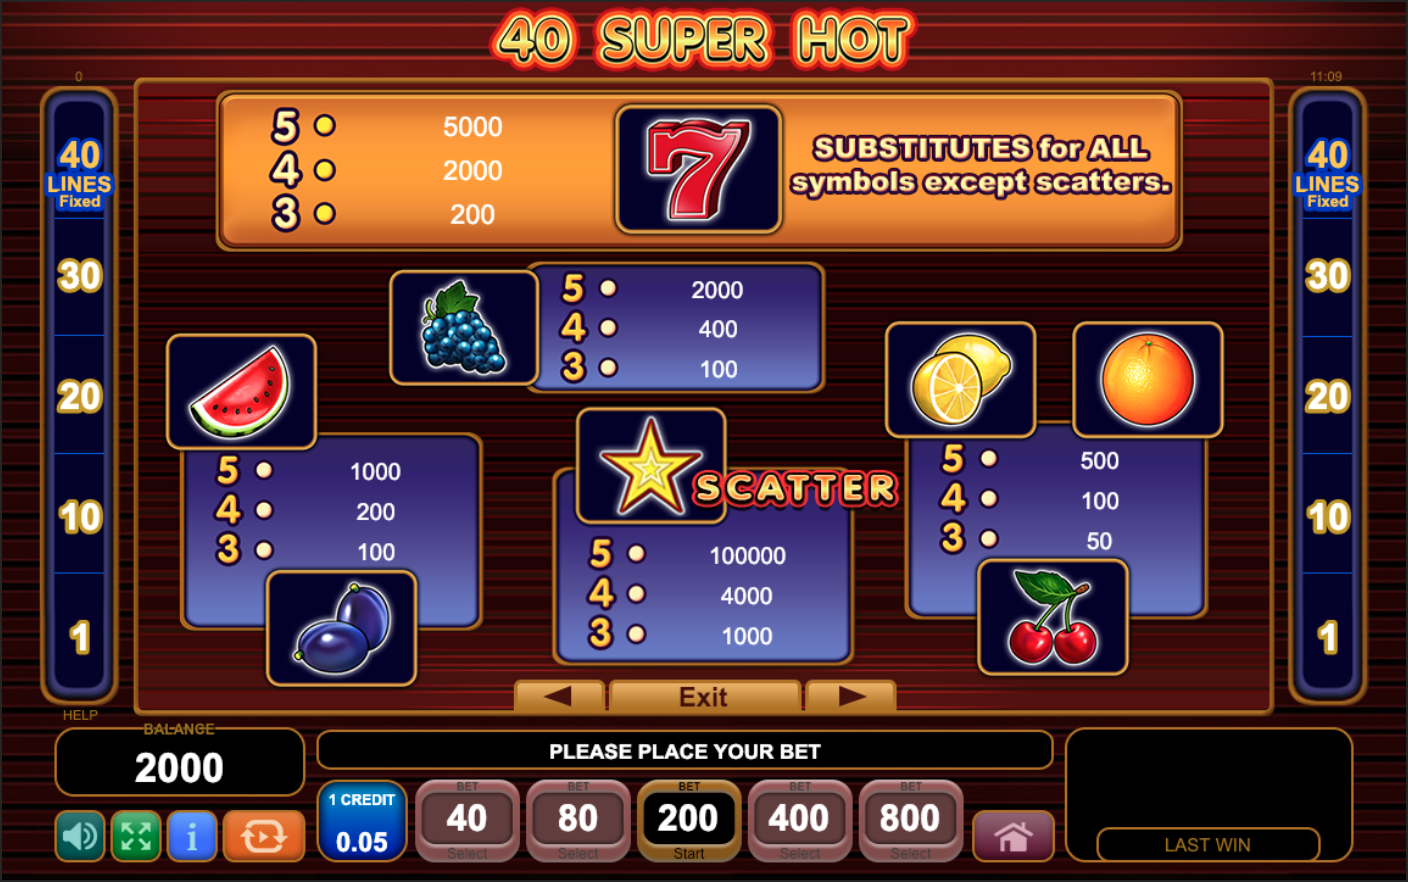 40 super hot casino game free